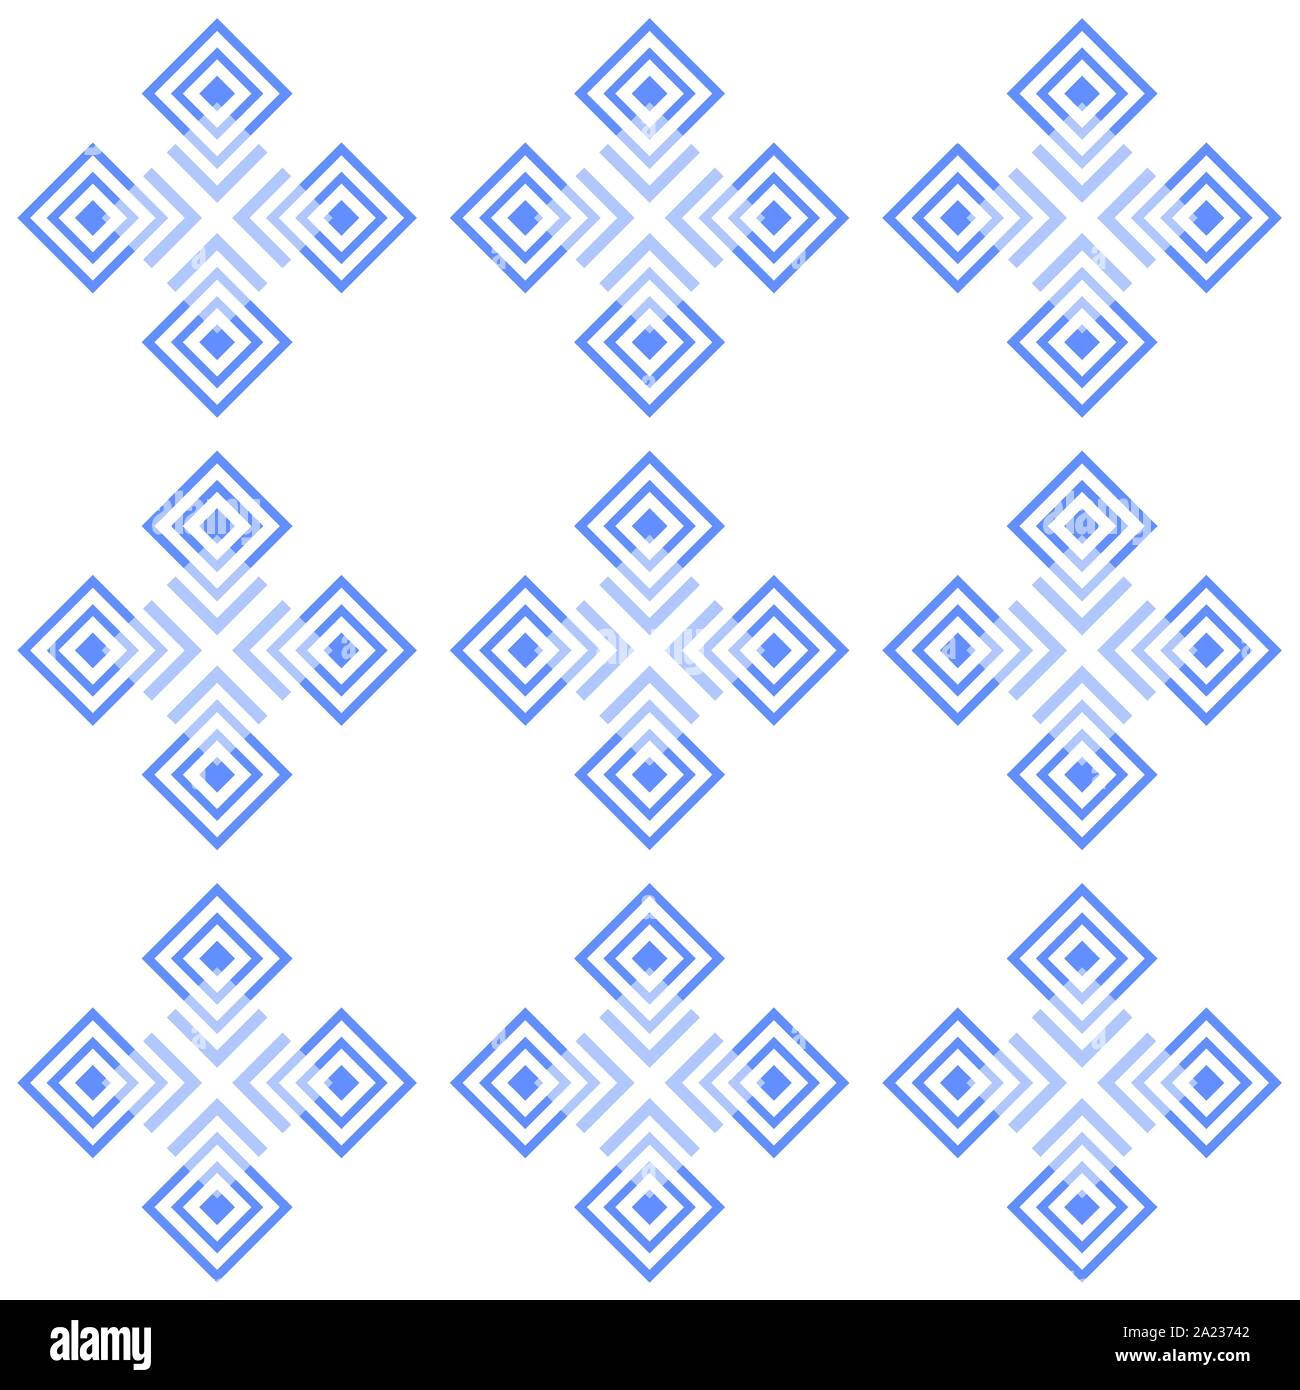 Combinación de forma redonda y cuadrada y figuras geométricas simétricas configuración imitando azulejos antiguos Ilustración del Vector